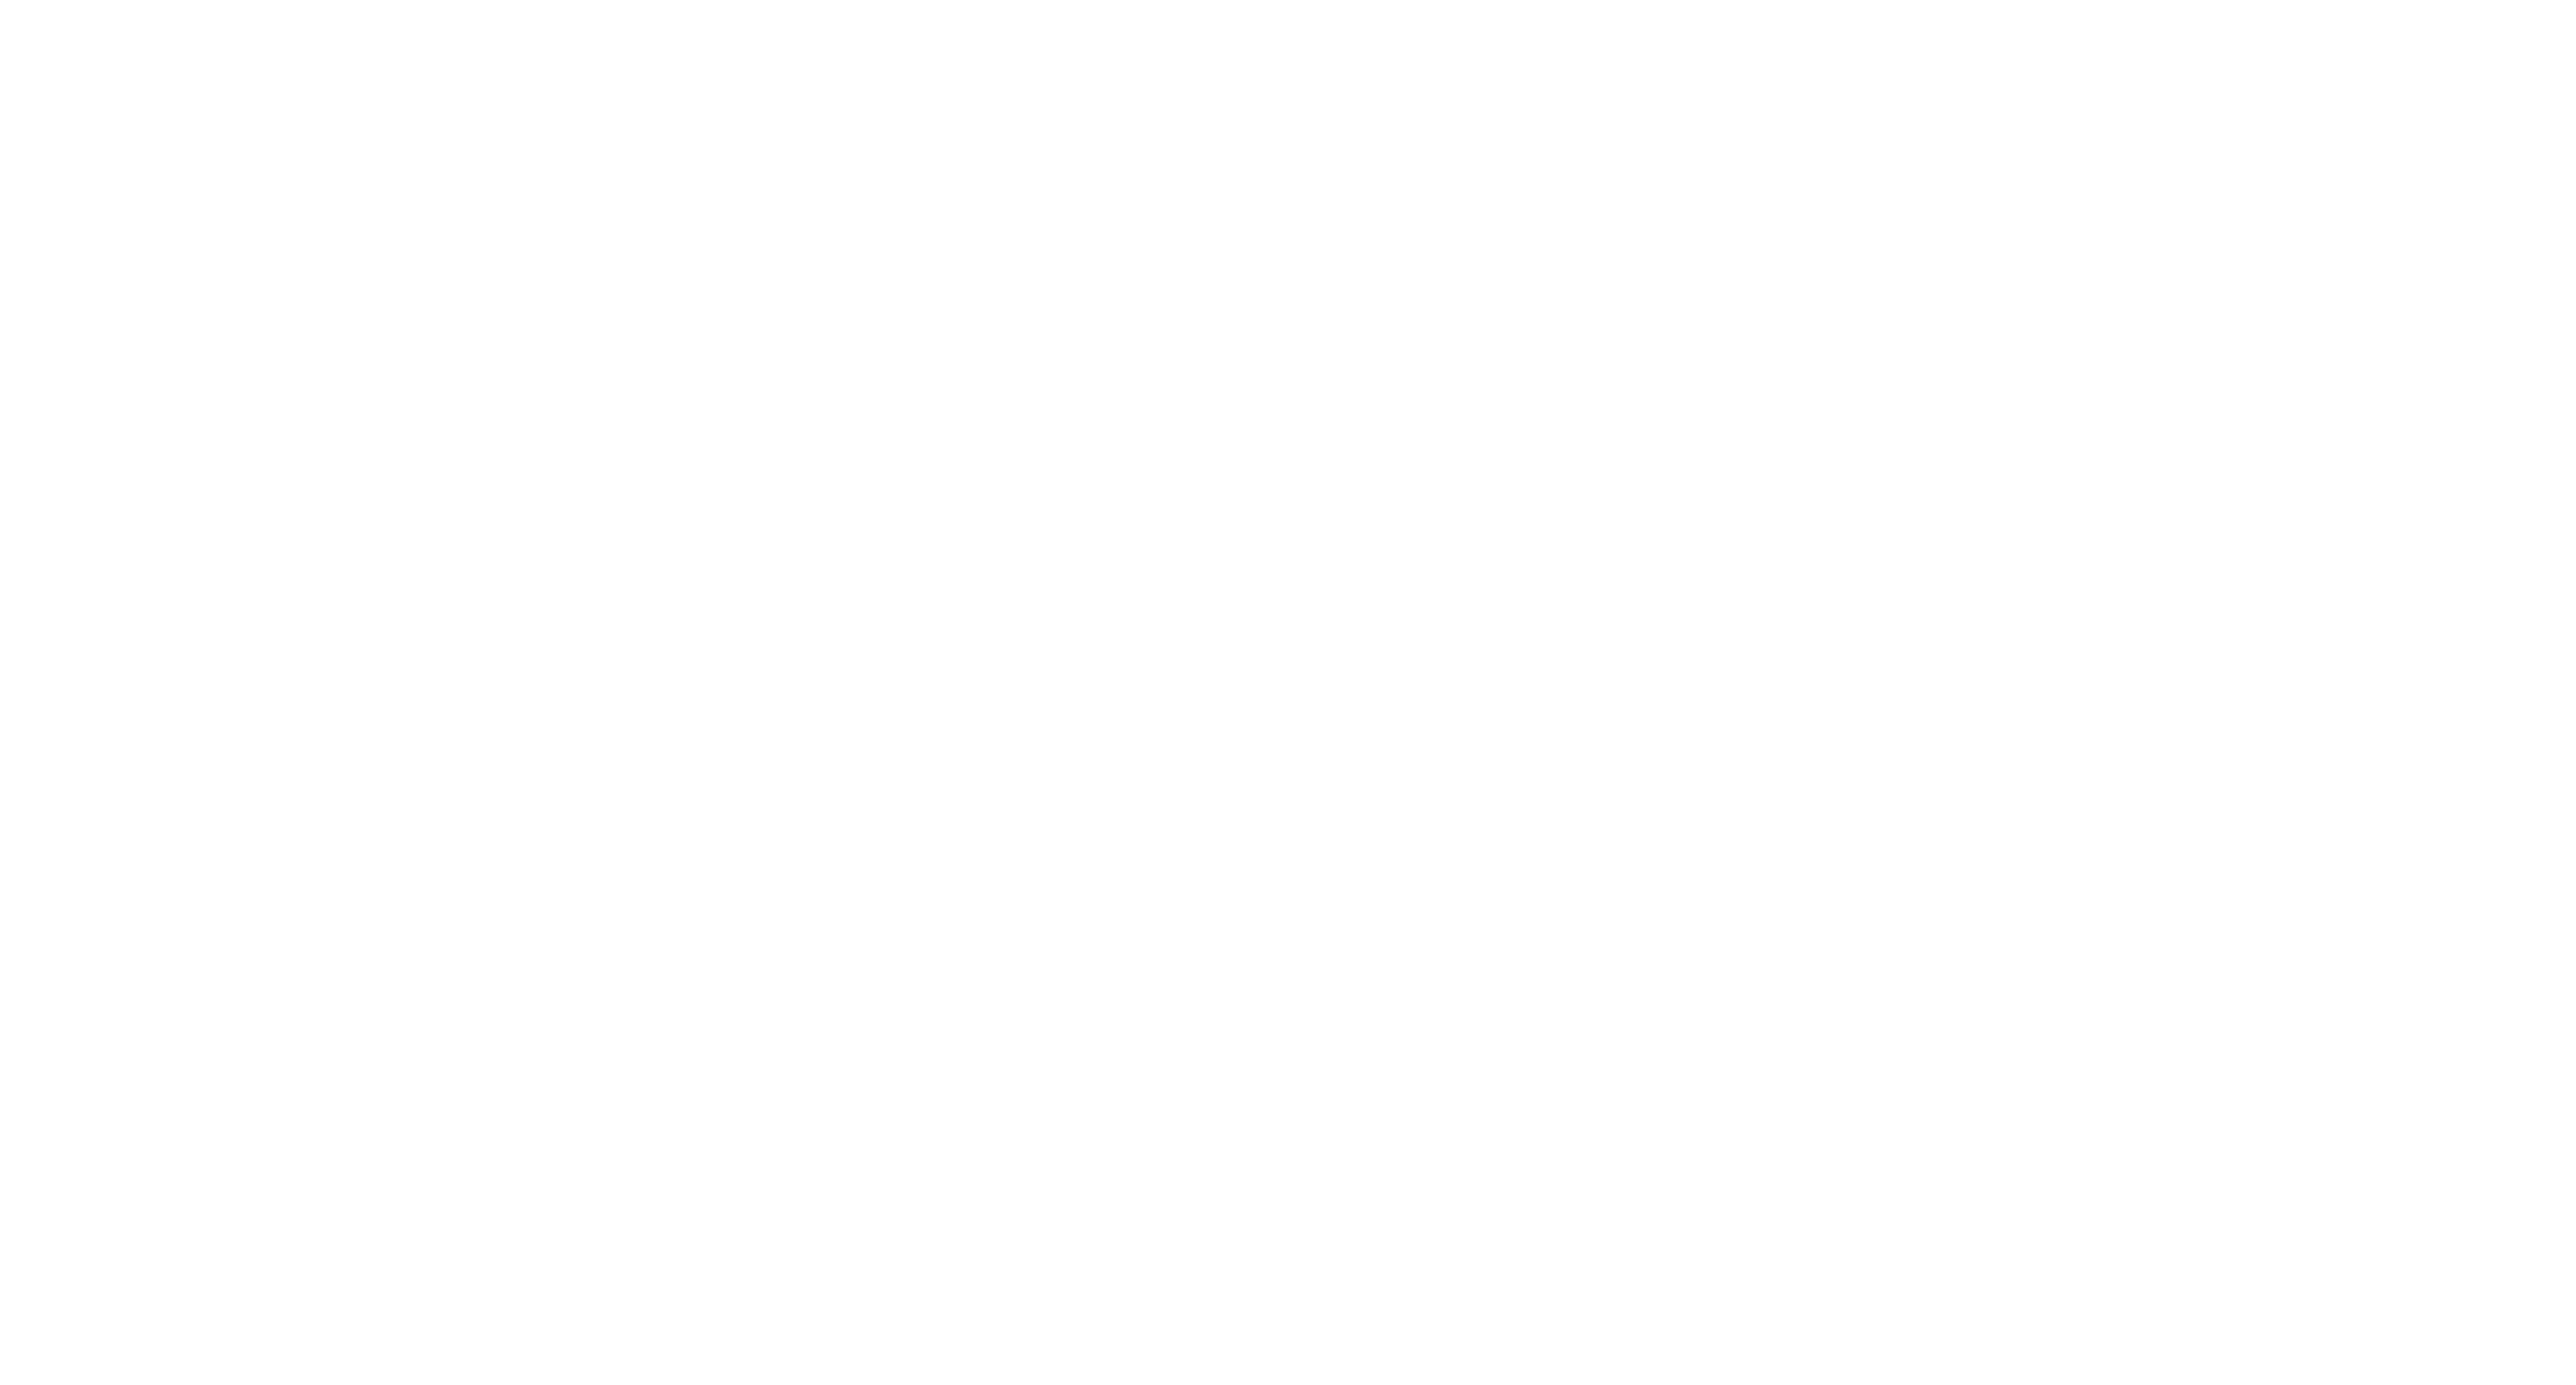 Kammerhofer